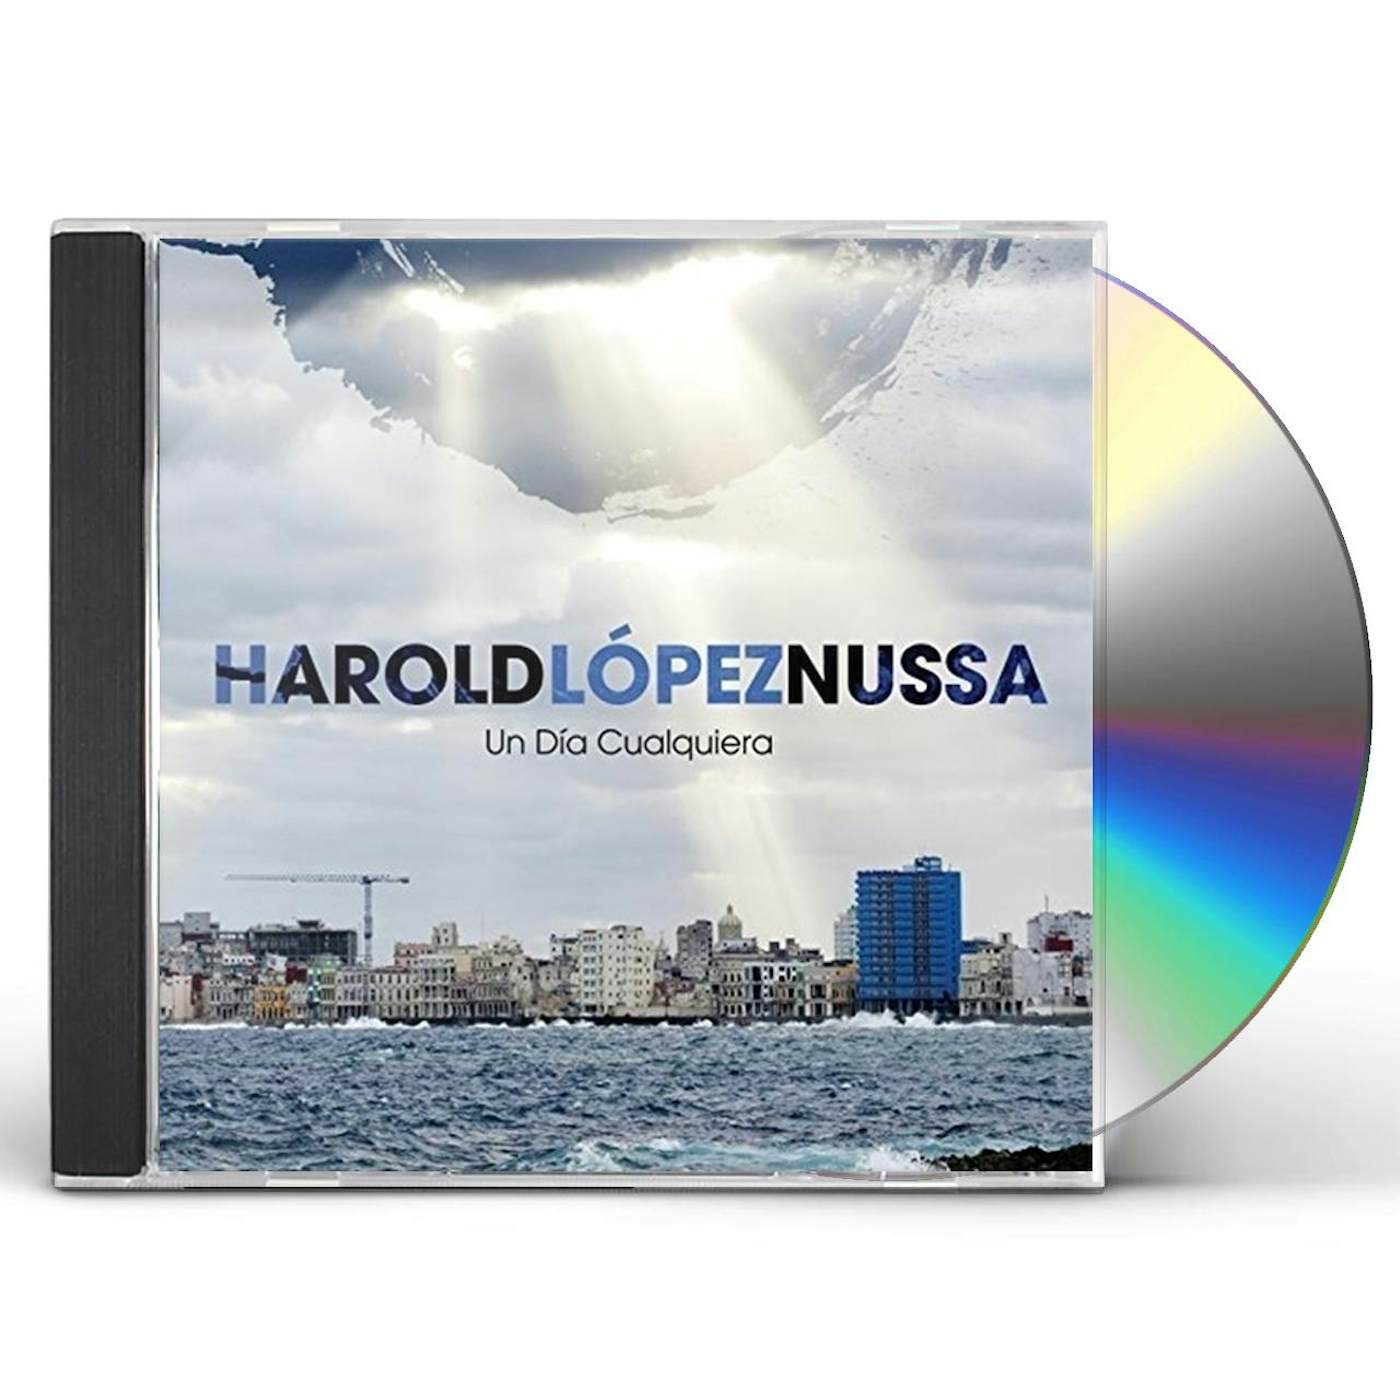 Harold Lopez Nussa UN DIA CUALQUIERA CD